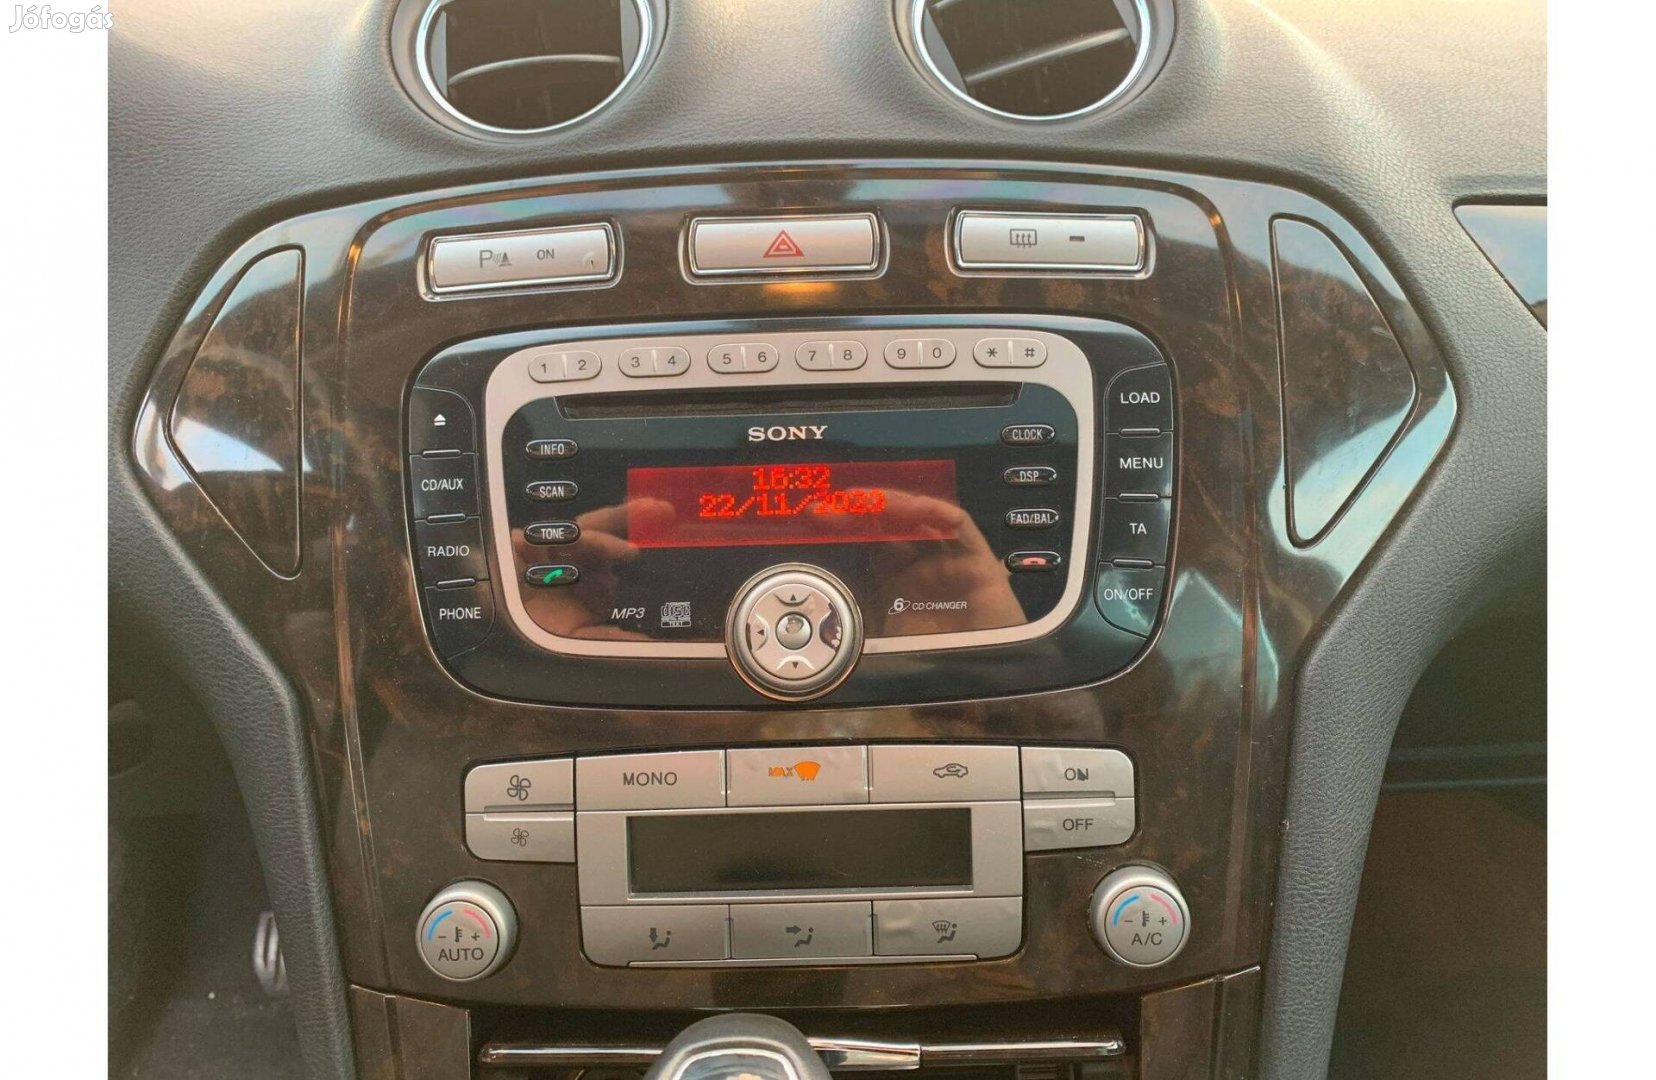 Ford Sony Cd táras 6 lemezes fejegység MP3 lejátszás